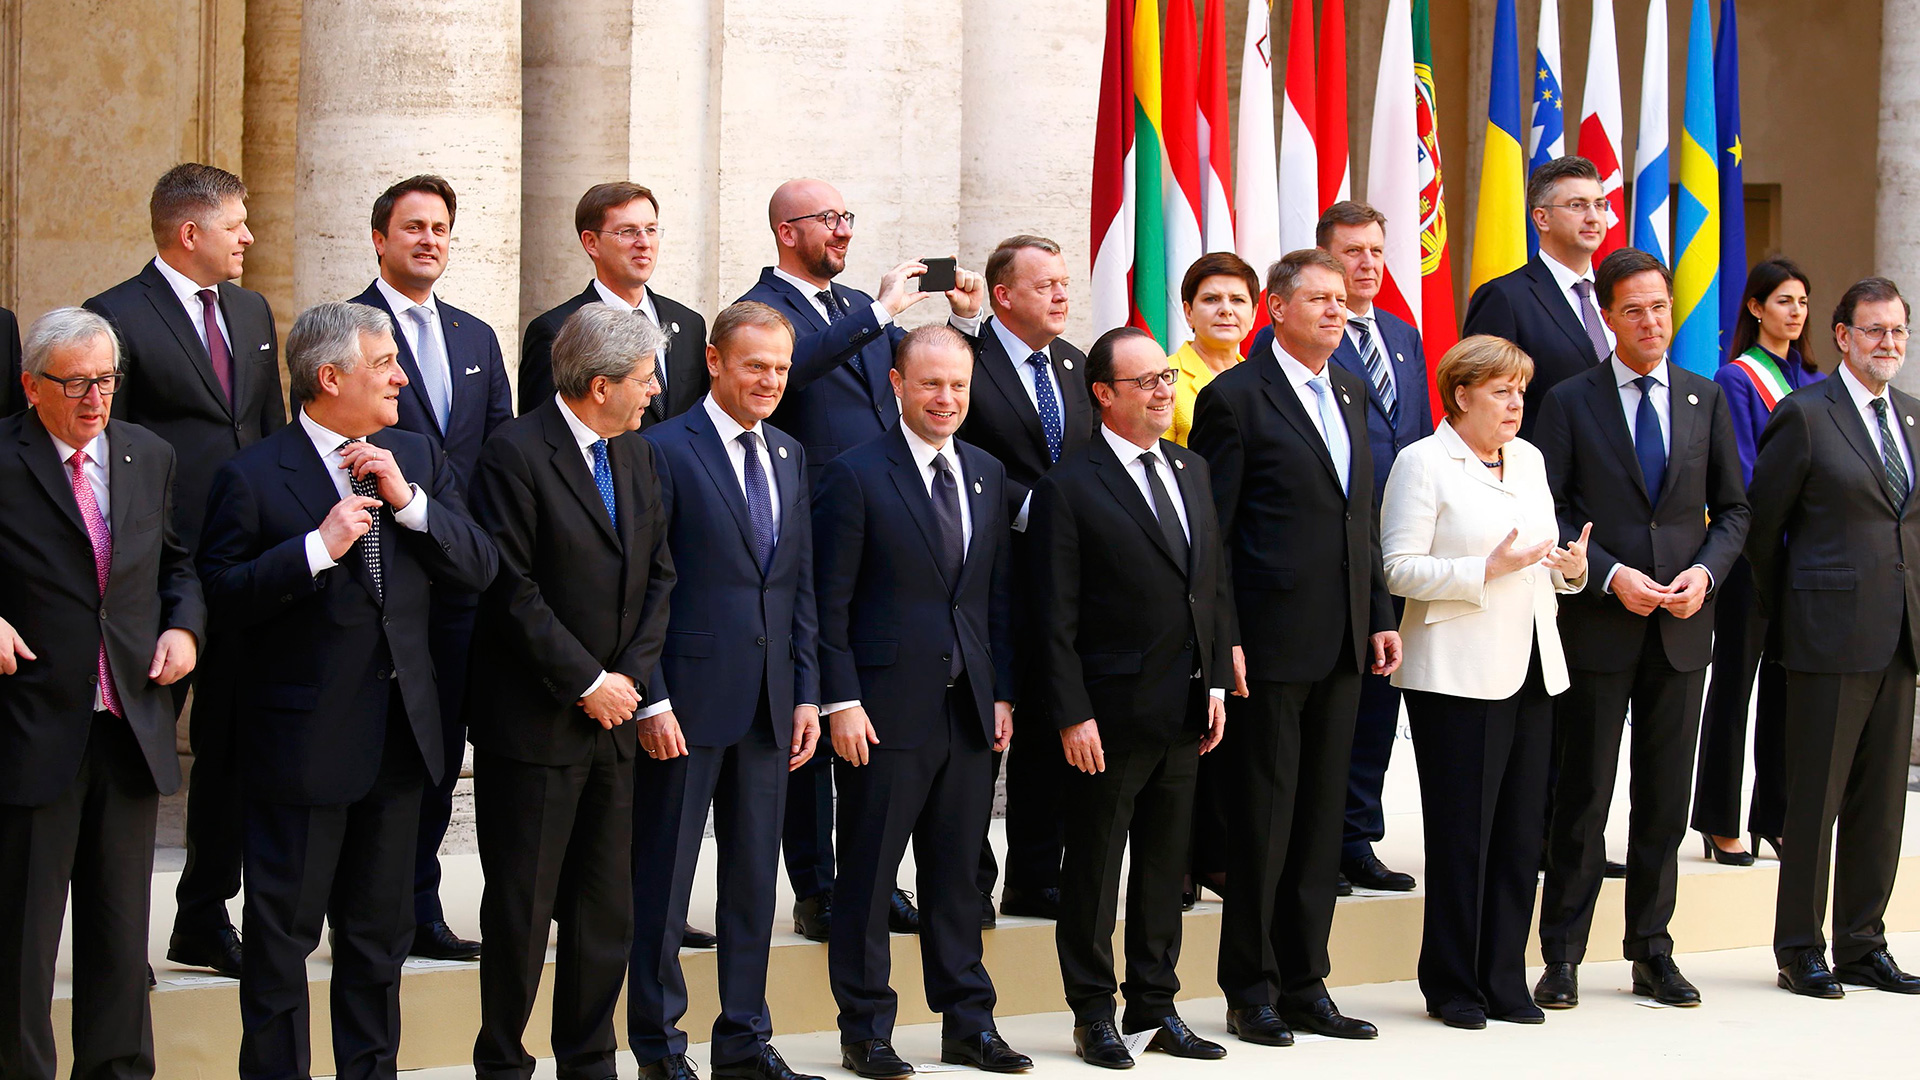 Los líderes europeos reafirman su compromiso con la Unión a pesar del Brexit